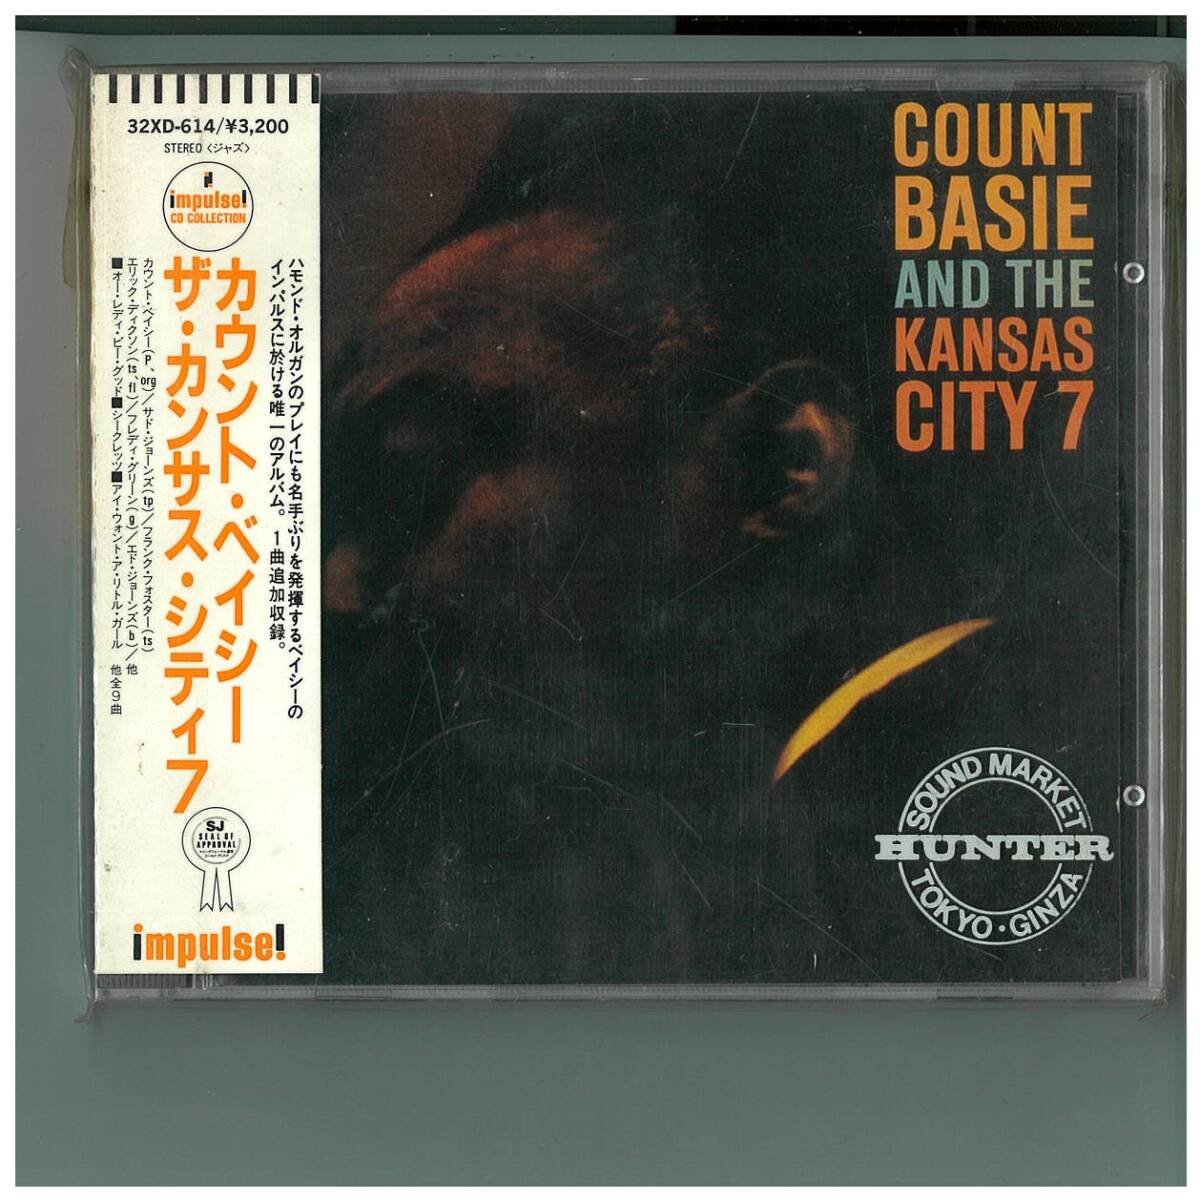 CD☆カウント ベイシー ザ カンサス シティ 7☆Count Basie and the Kansas City 7☆帯付☆32XD-614の画像1